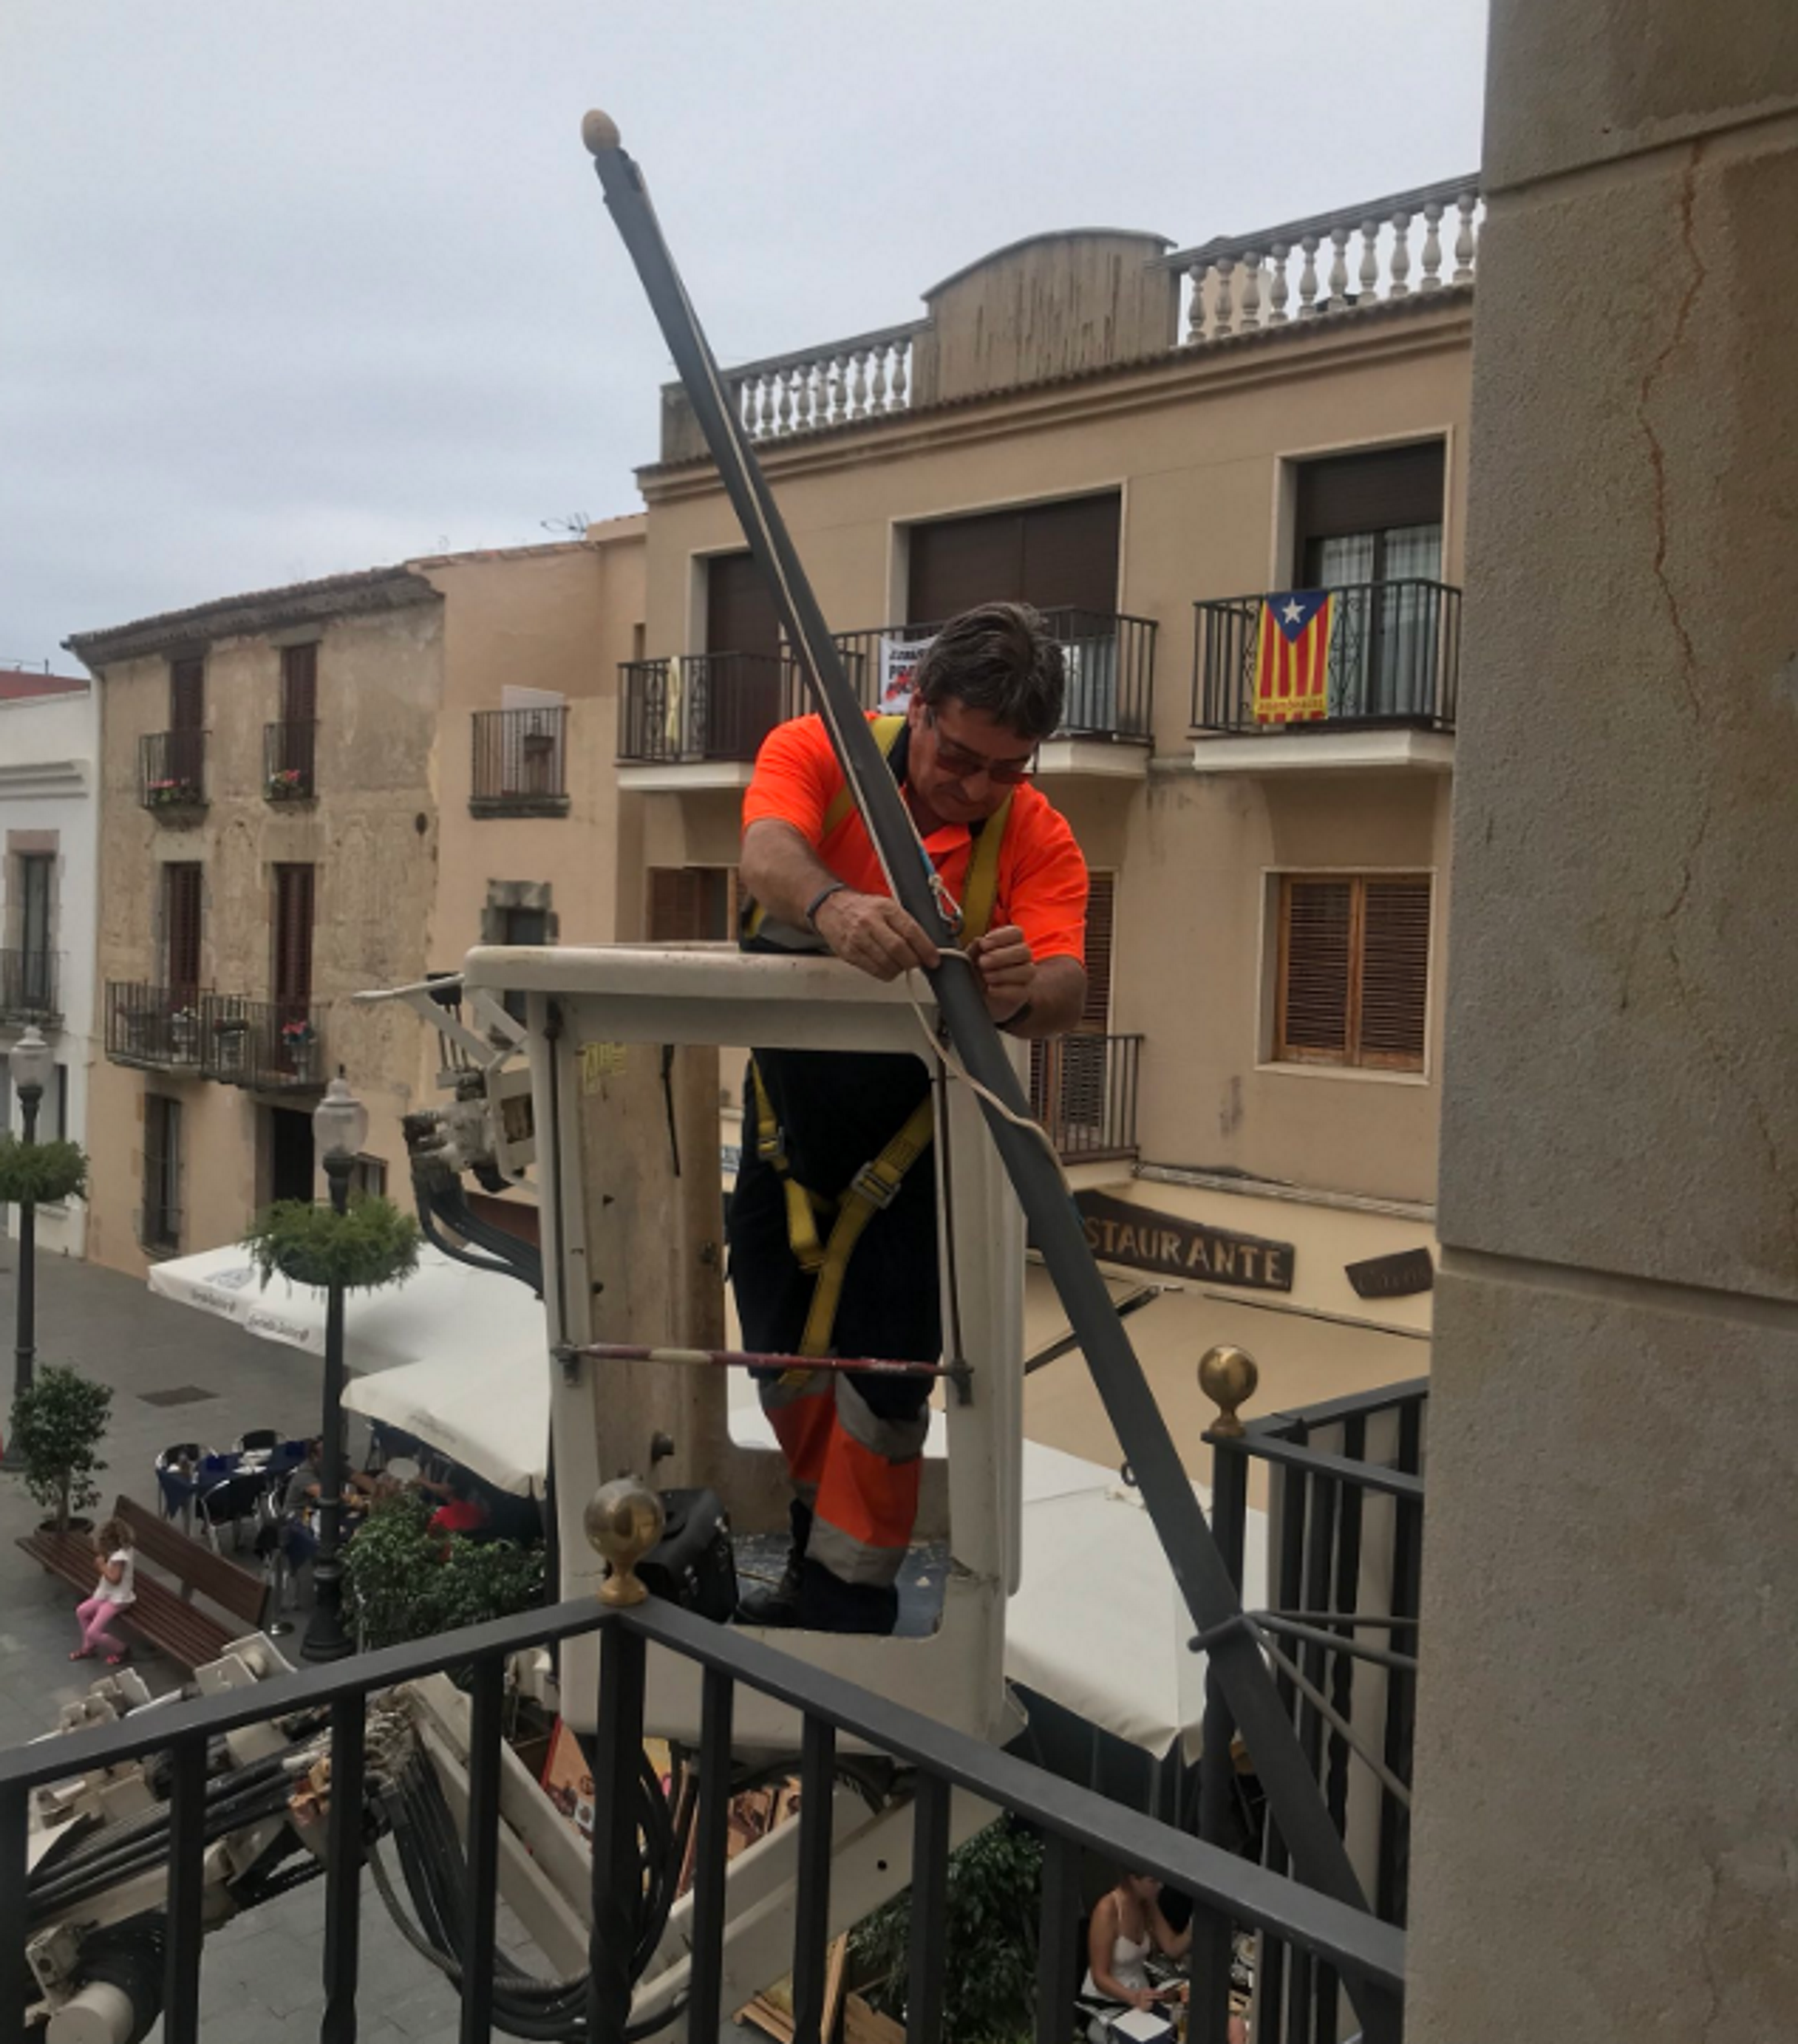 Arrancan la bandera catalana del Ayuntamiento de Calella